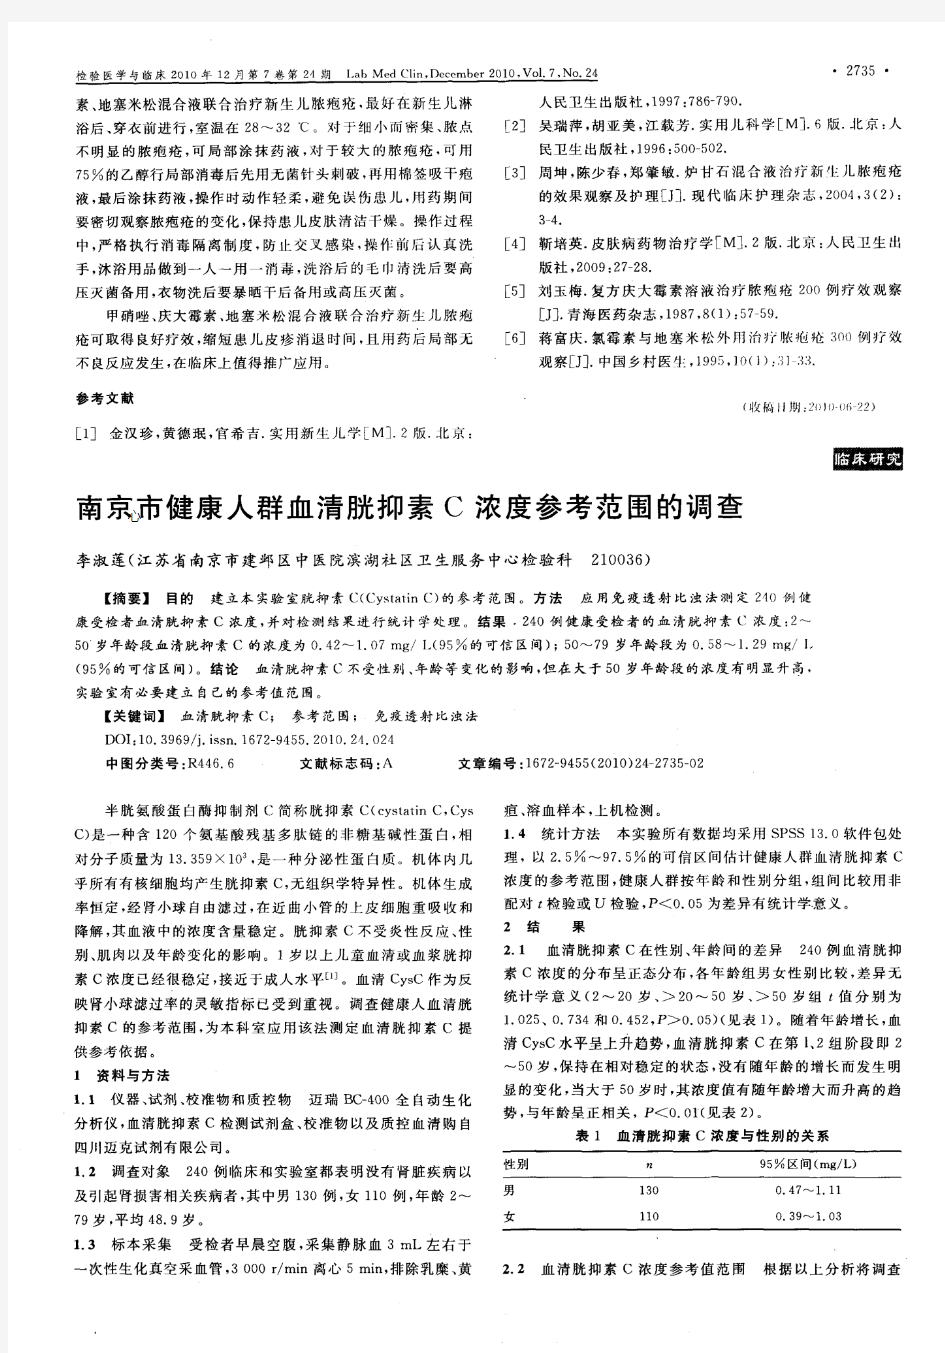 南京市健康人群血清胱抑素C浓度参考范围的调查